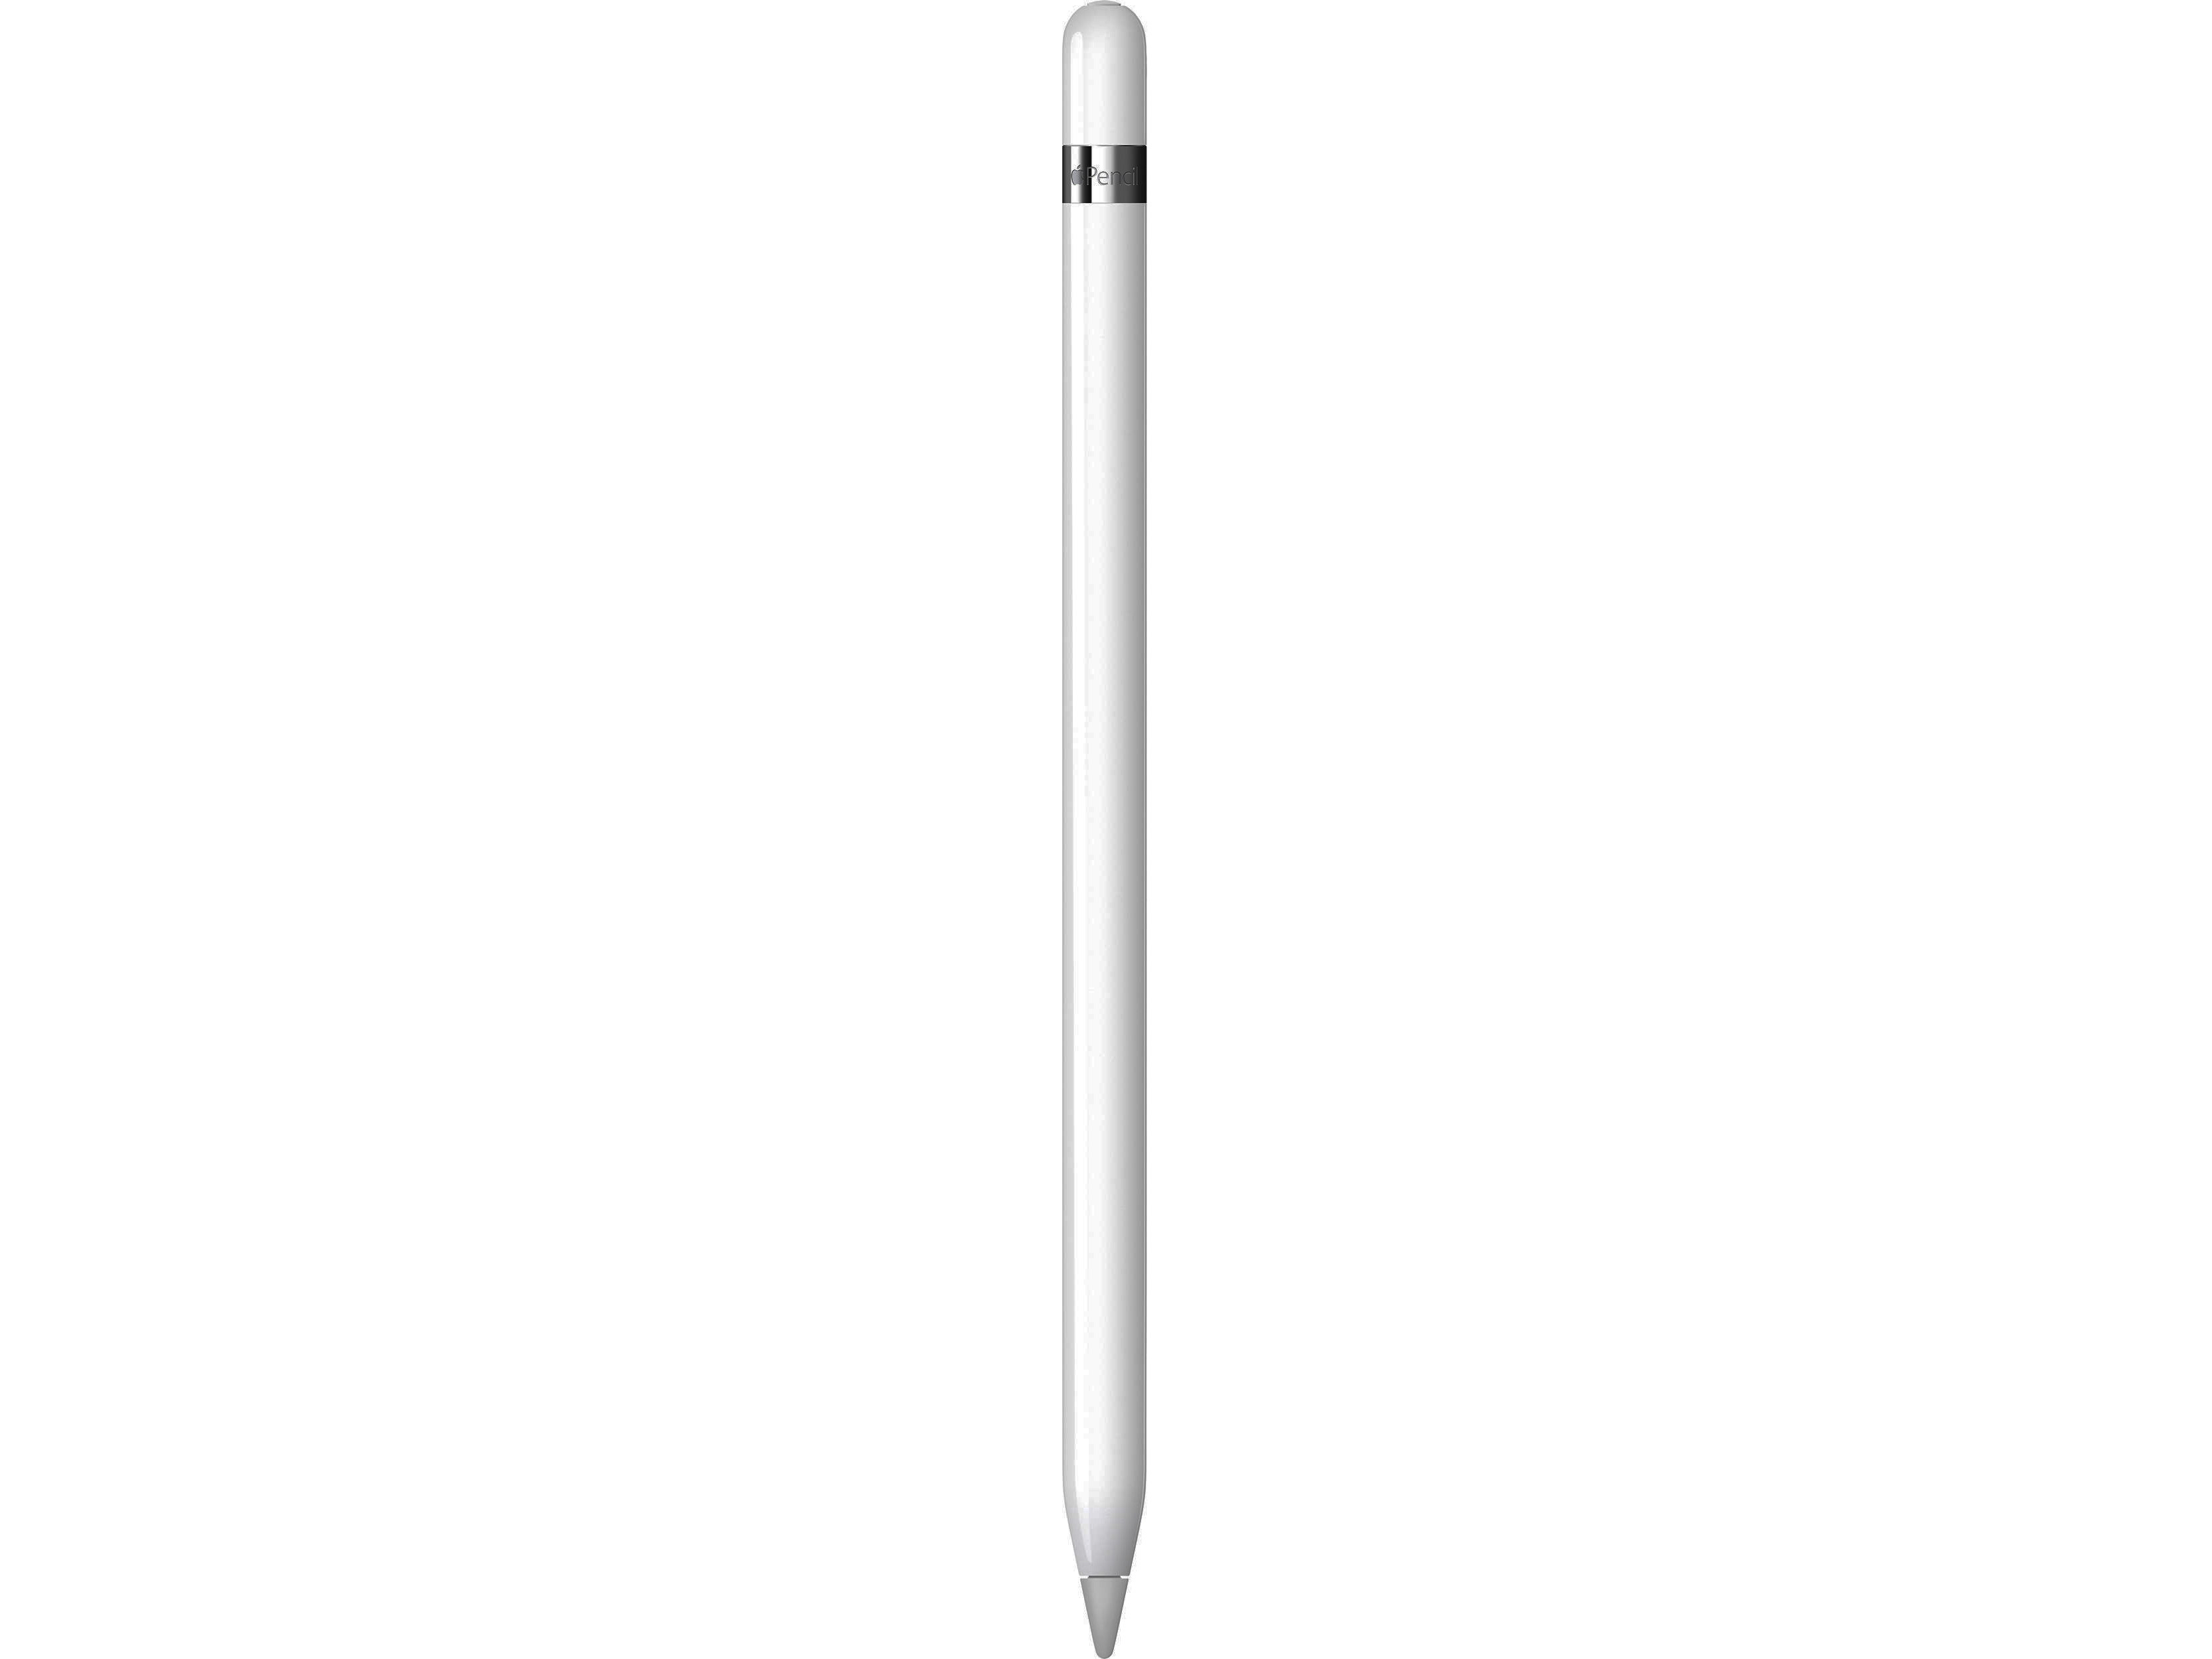 Apple Pencil (£80)